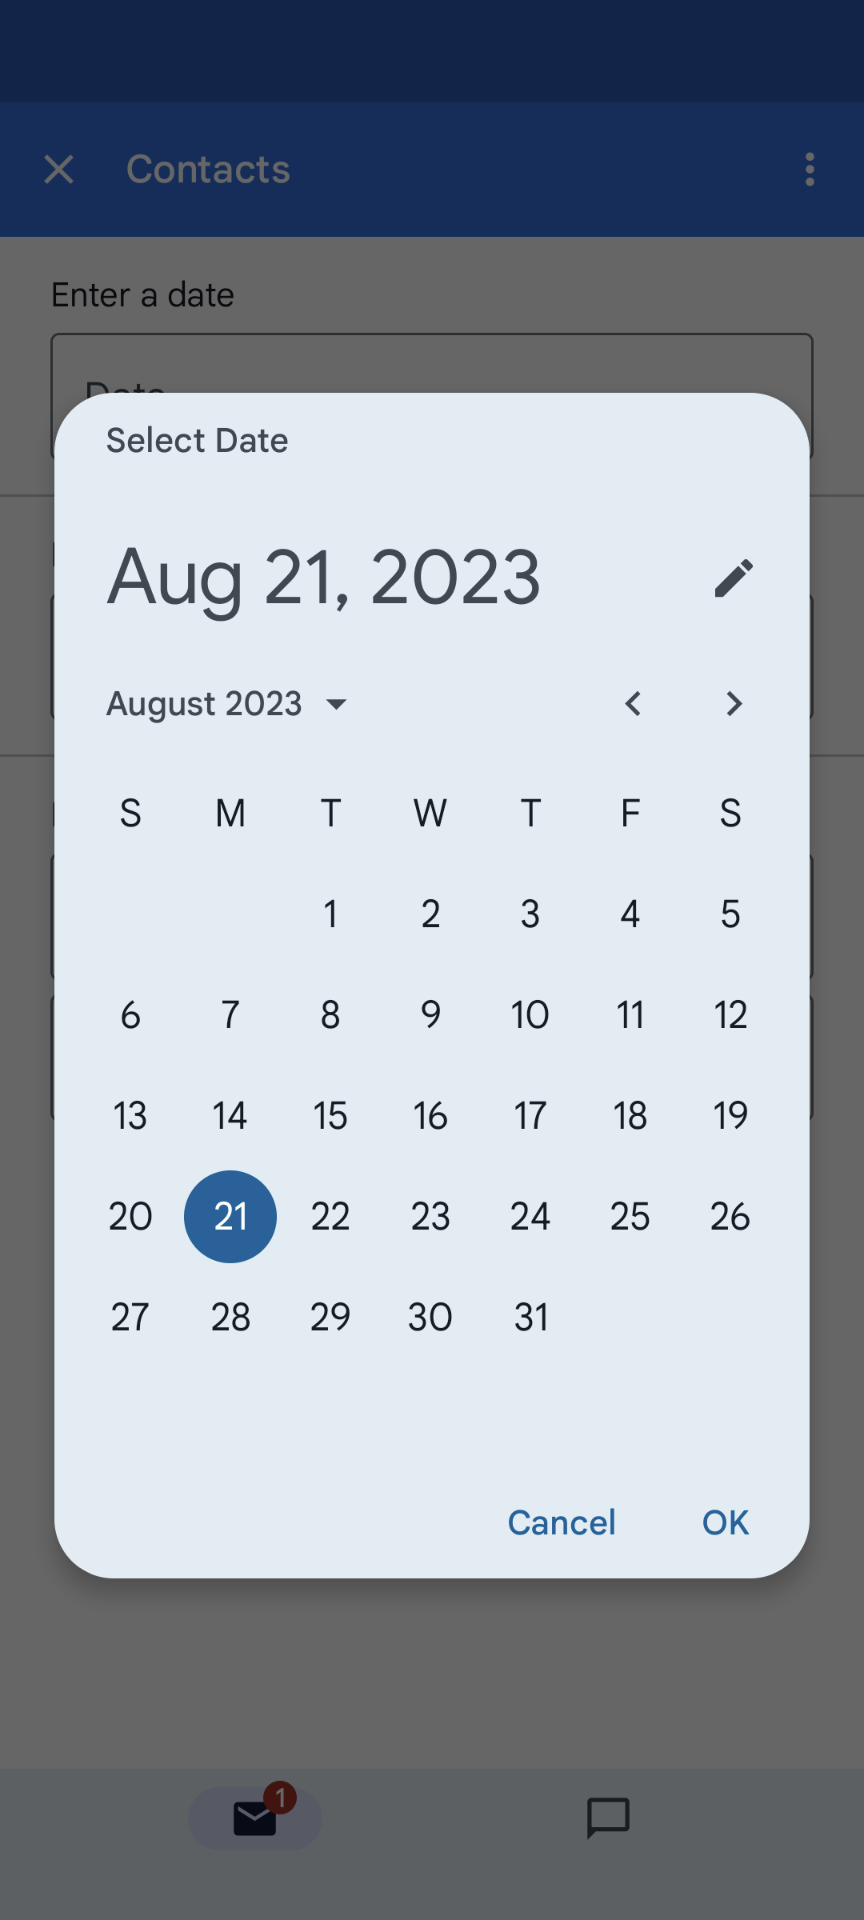 मोबाइल पर, तारीख चुनने वाले टूल का उदाहरण